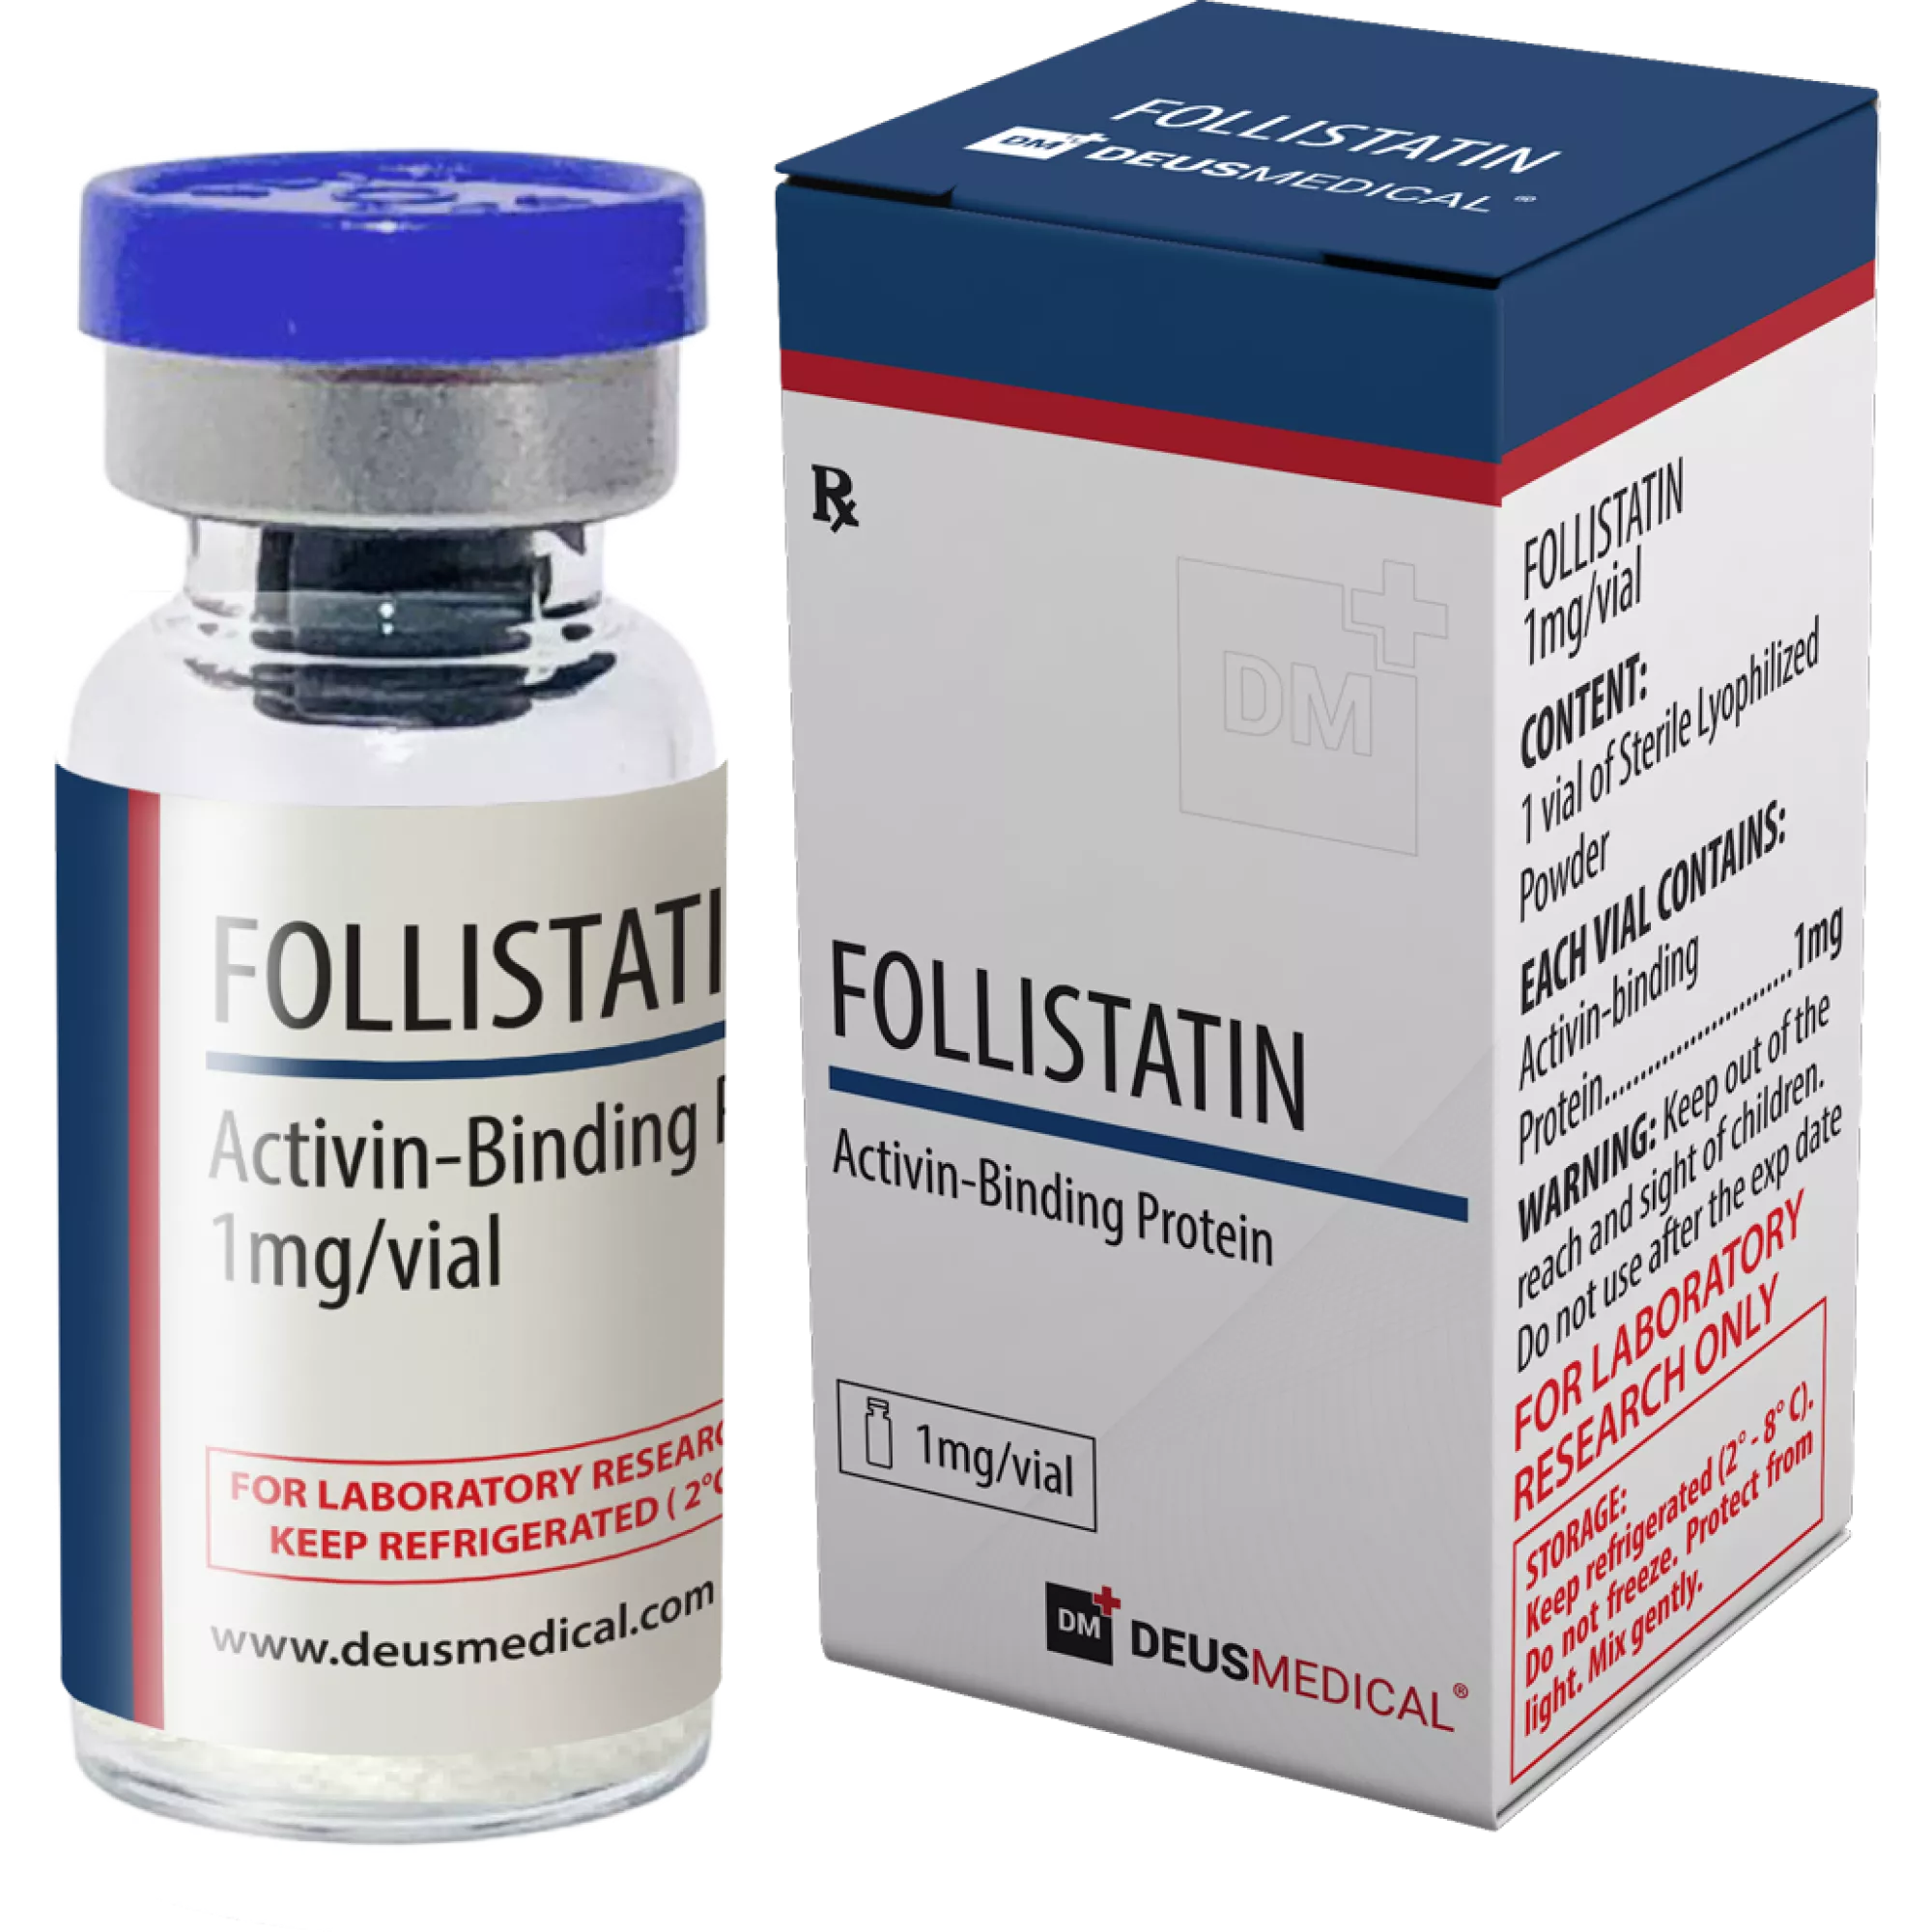 FOLLISTATIN (Activin-Binding Protein), Deus Medical, Köp steroider online - www.deuspower.shop